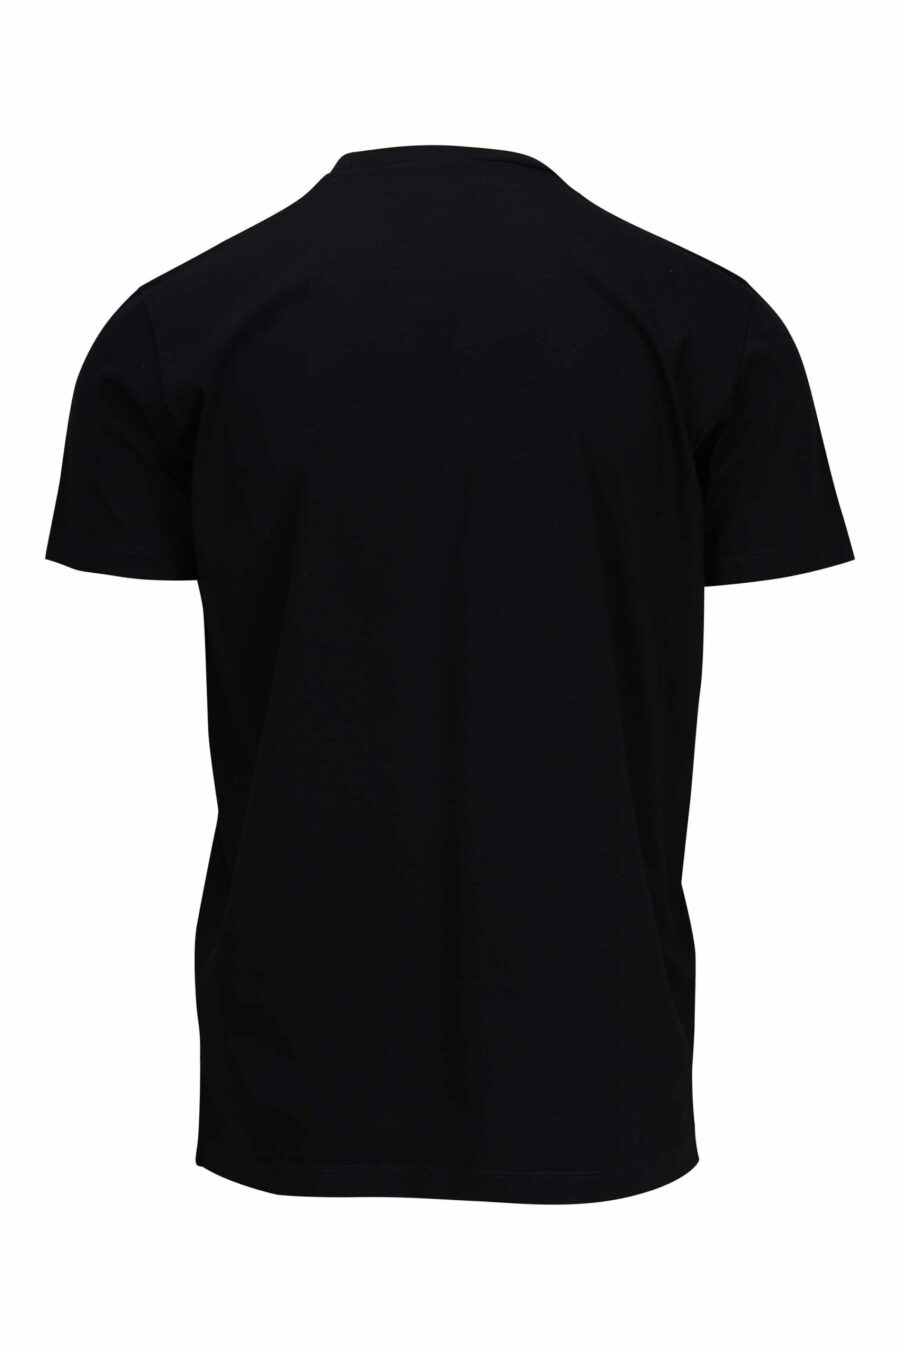 T-shirt preta com maxilogo monocromático redondo - 8054148086091 1 scaled